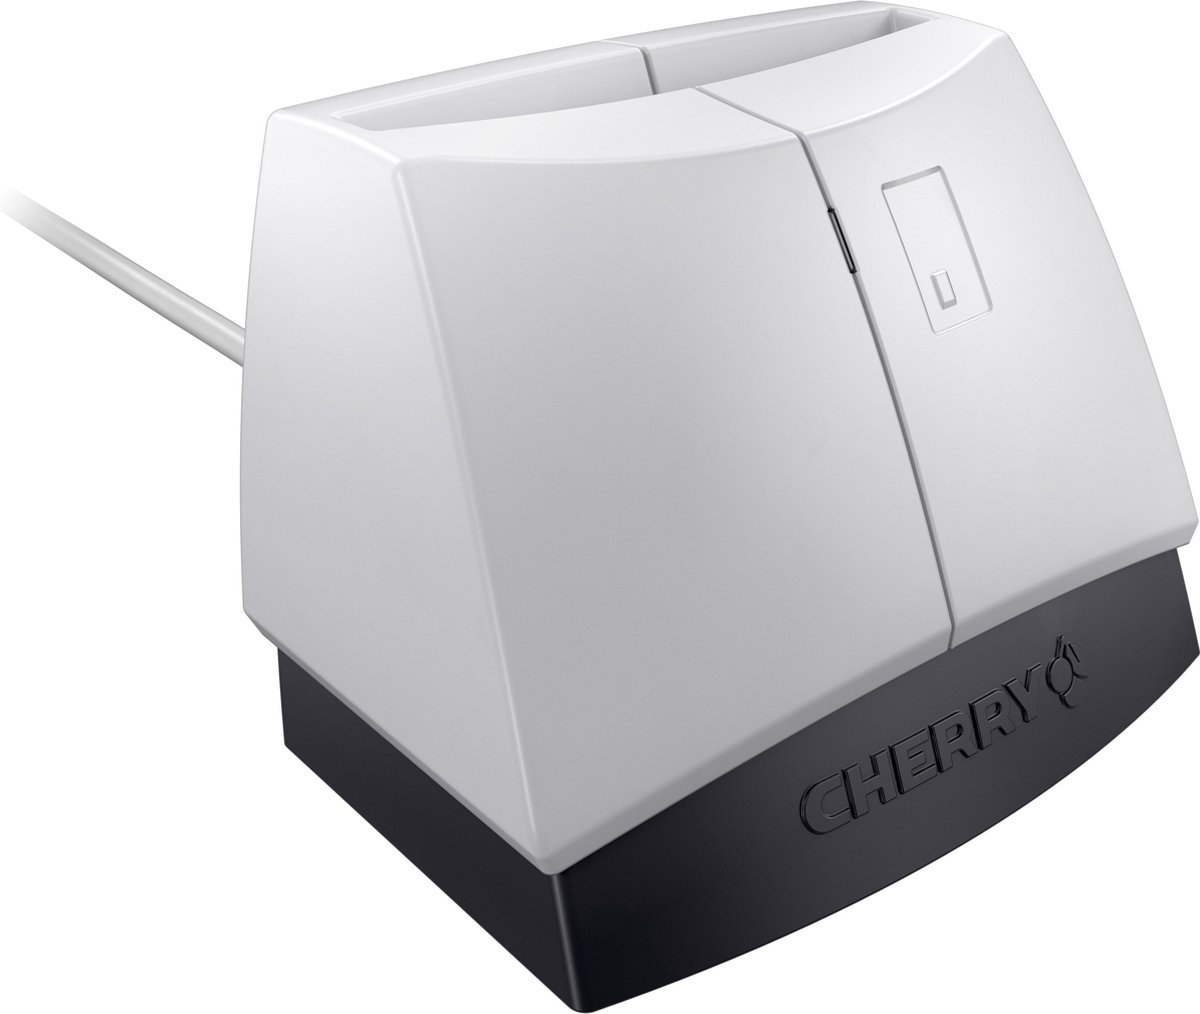 Cherry SmartTerminal ST-1144 smart card reader, Grijs USB 2.0 - Zwart